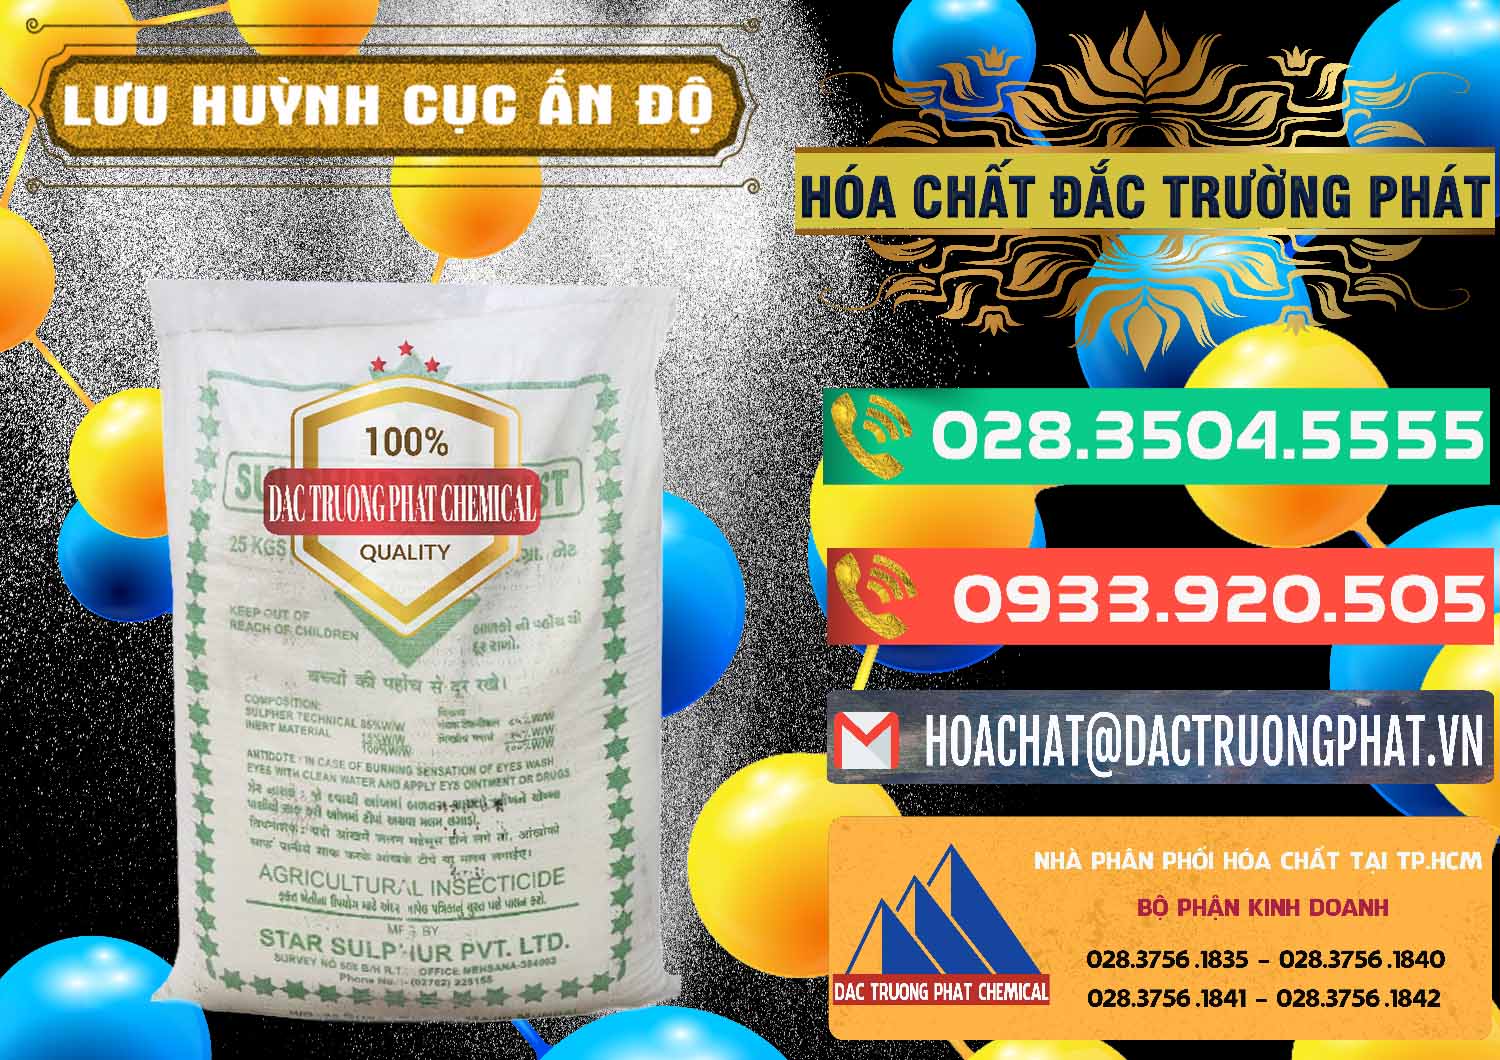 Cty chuyên phân phối ( bán ) Lưu huỳnh Cục - Sulfur Ấn Độ India - 0348 - Cung cấp và kinh doanh hóa chất tại TP.HCM - congtyhoachat.com.vn